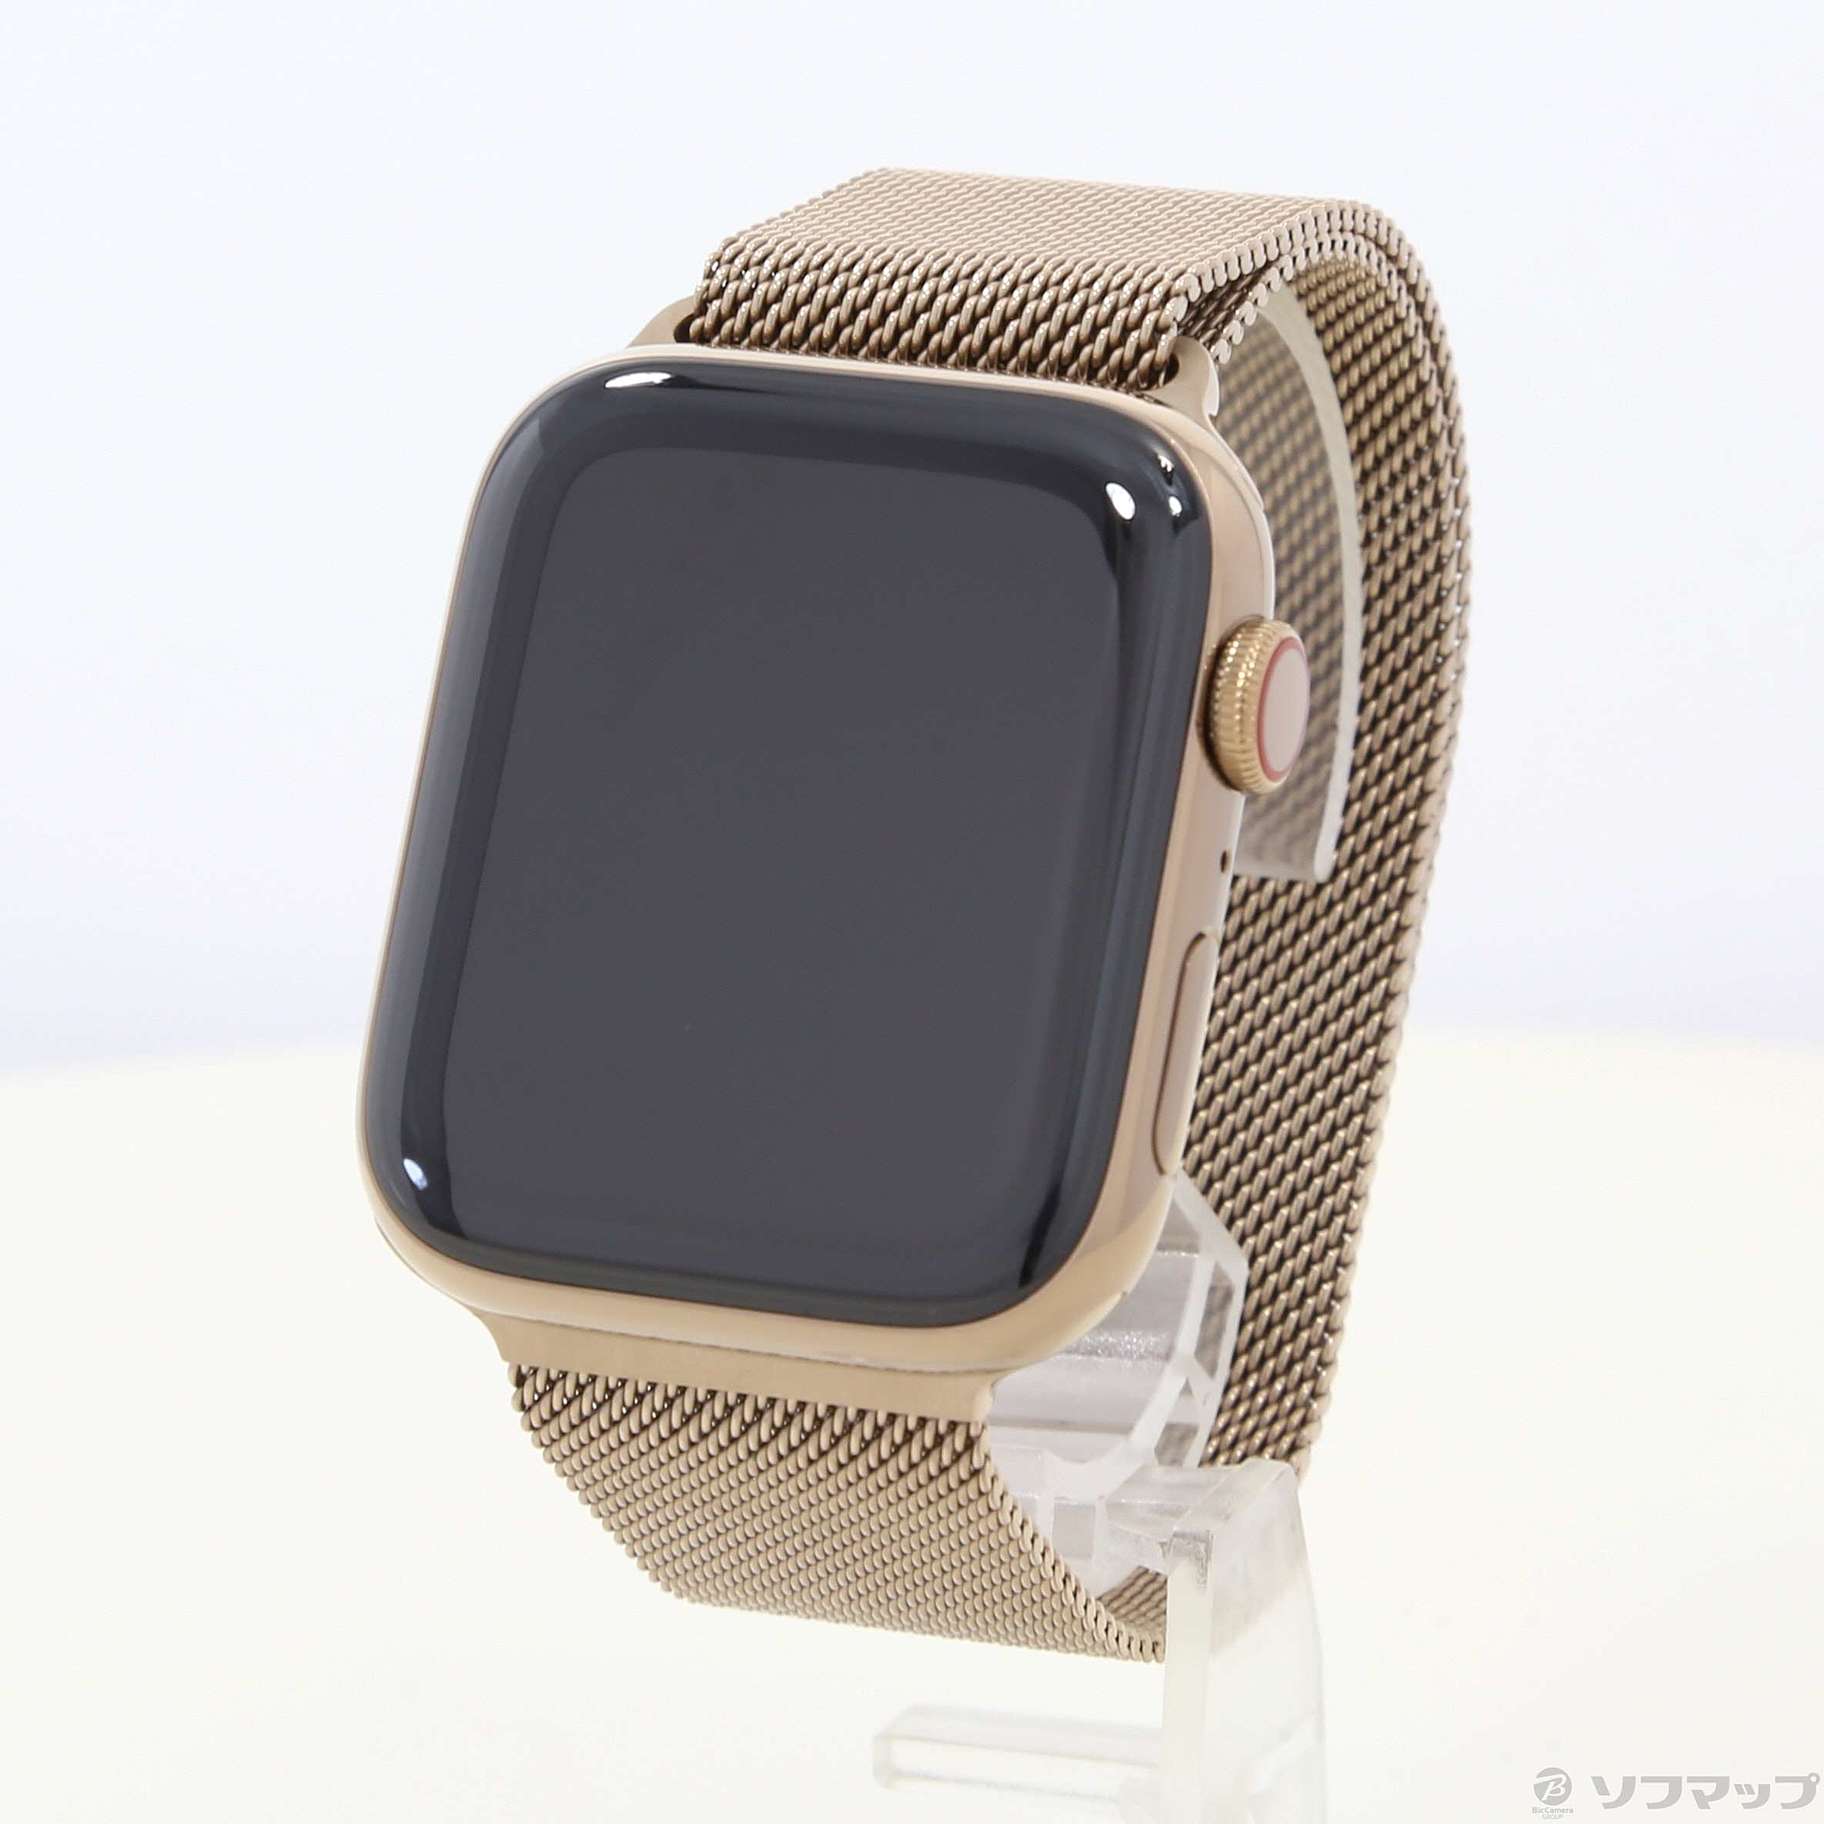 『希少品』Apple Watch series4 ゴールドステンレス　44mmどうぞご検討の程